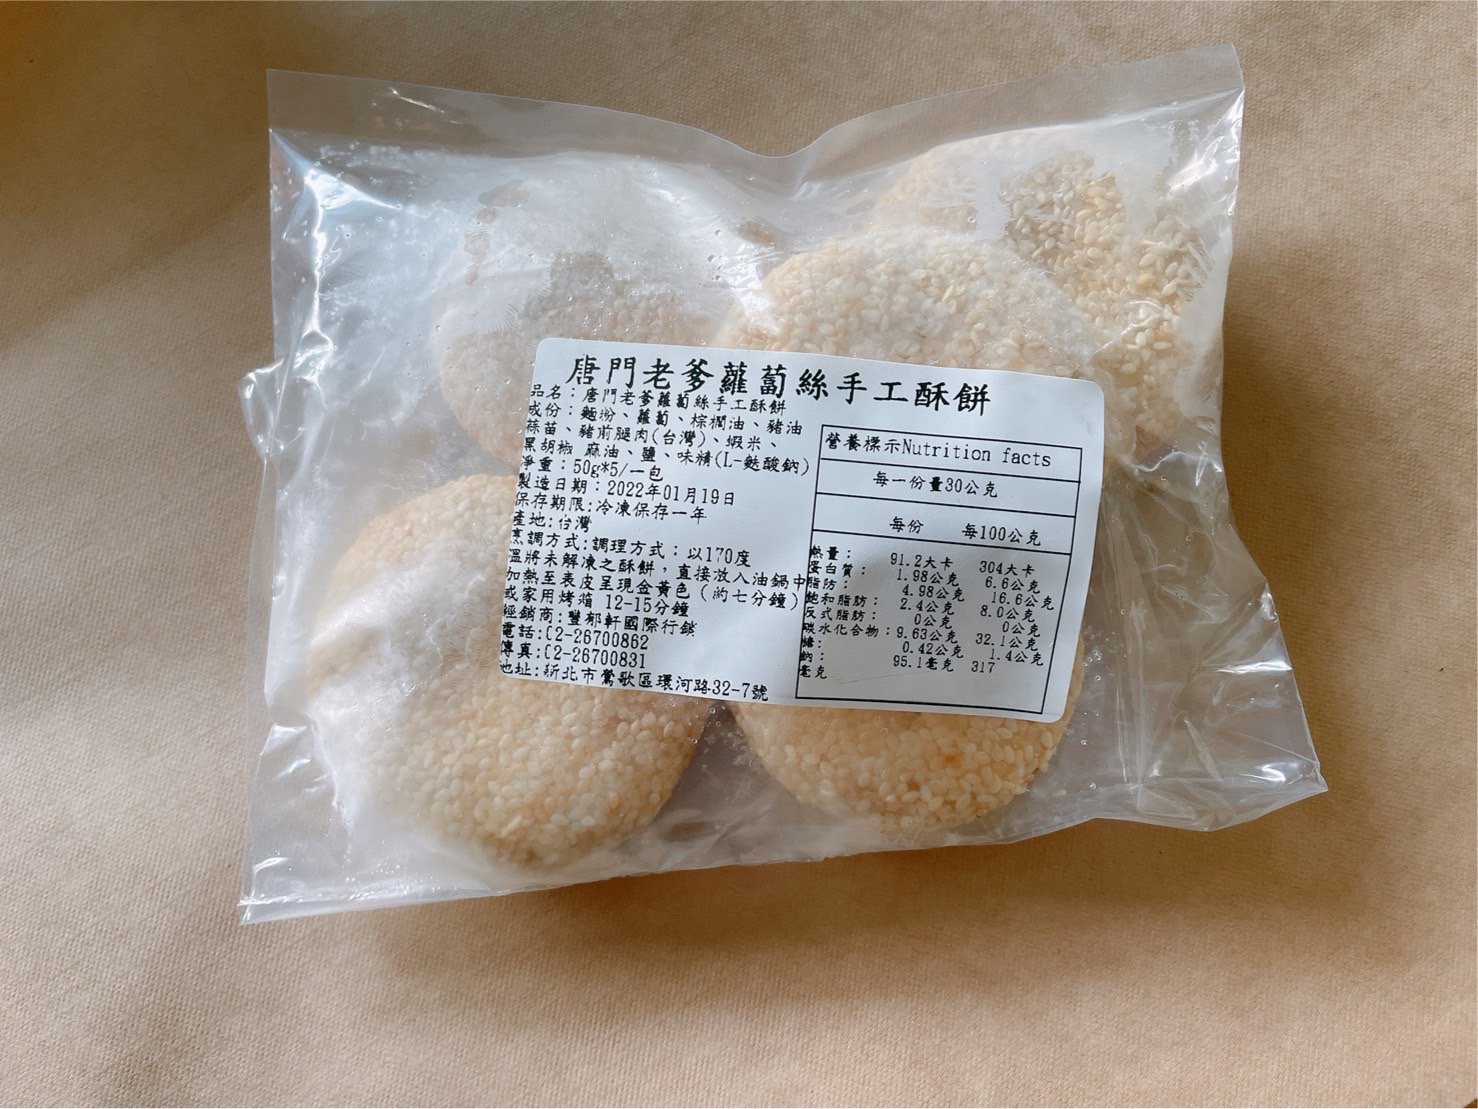 【唐門老爹】蘿蔔絲手工酥餅(5入/包)